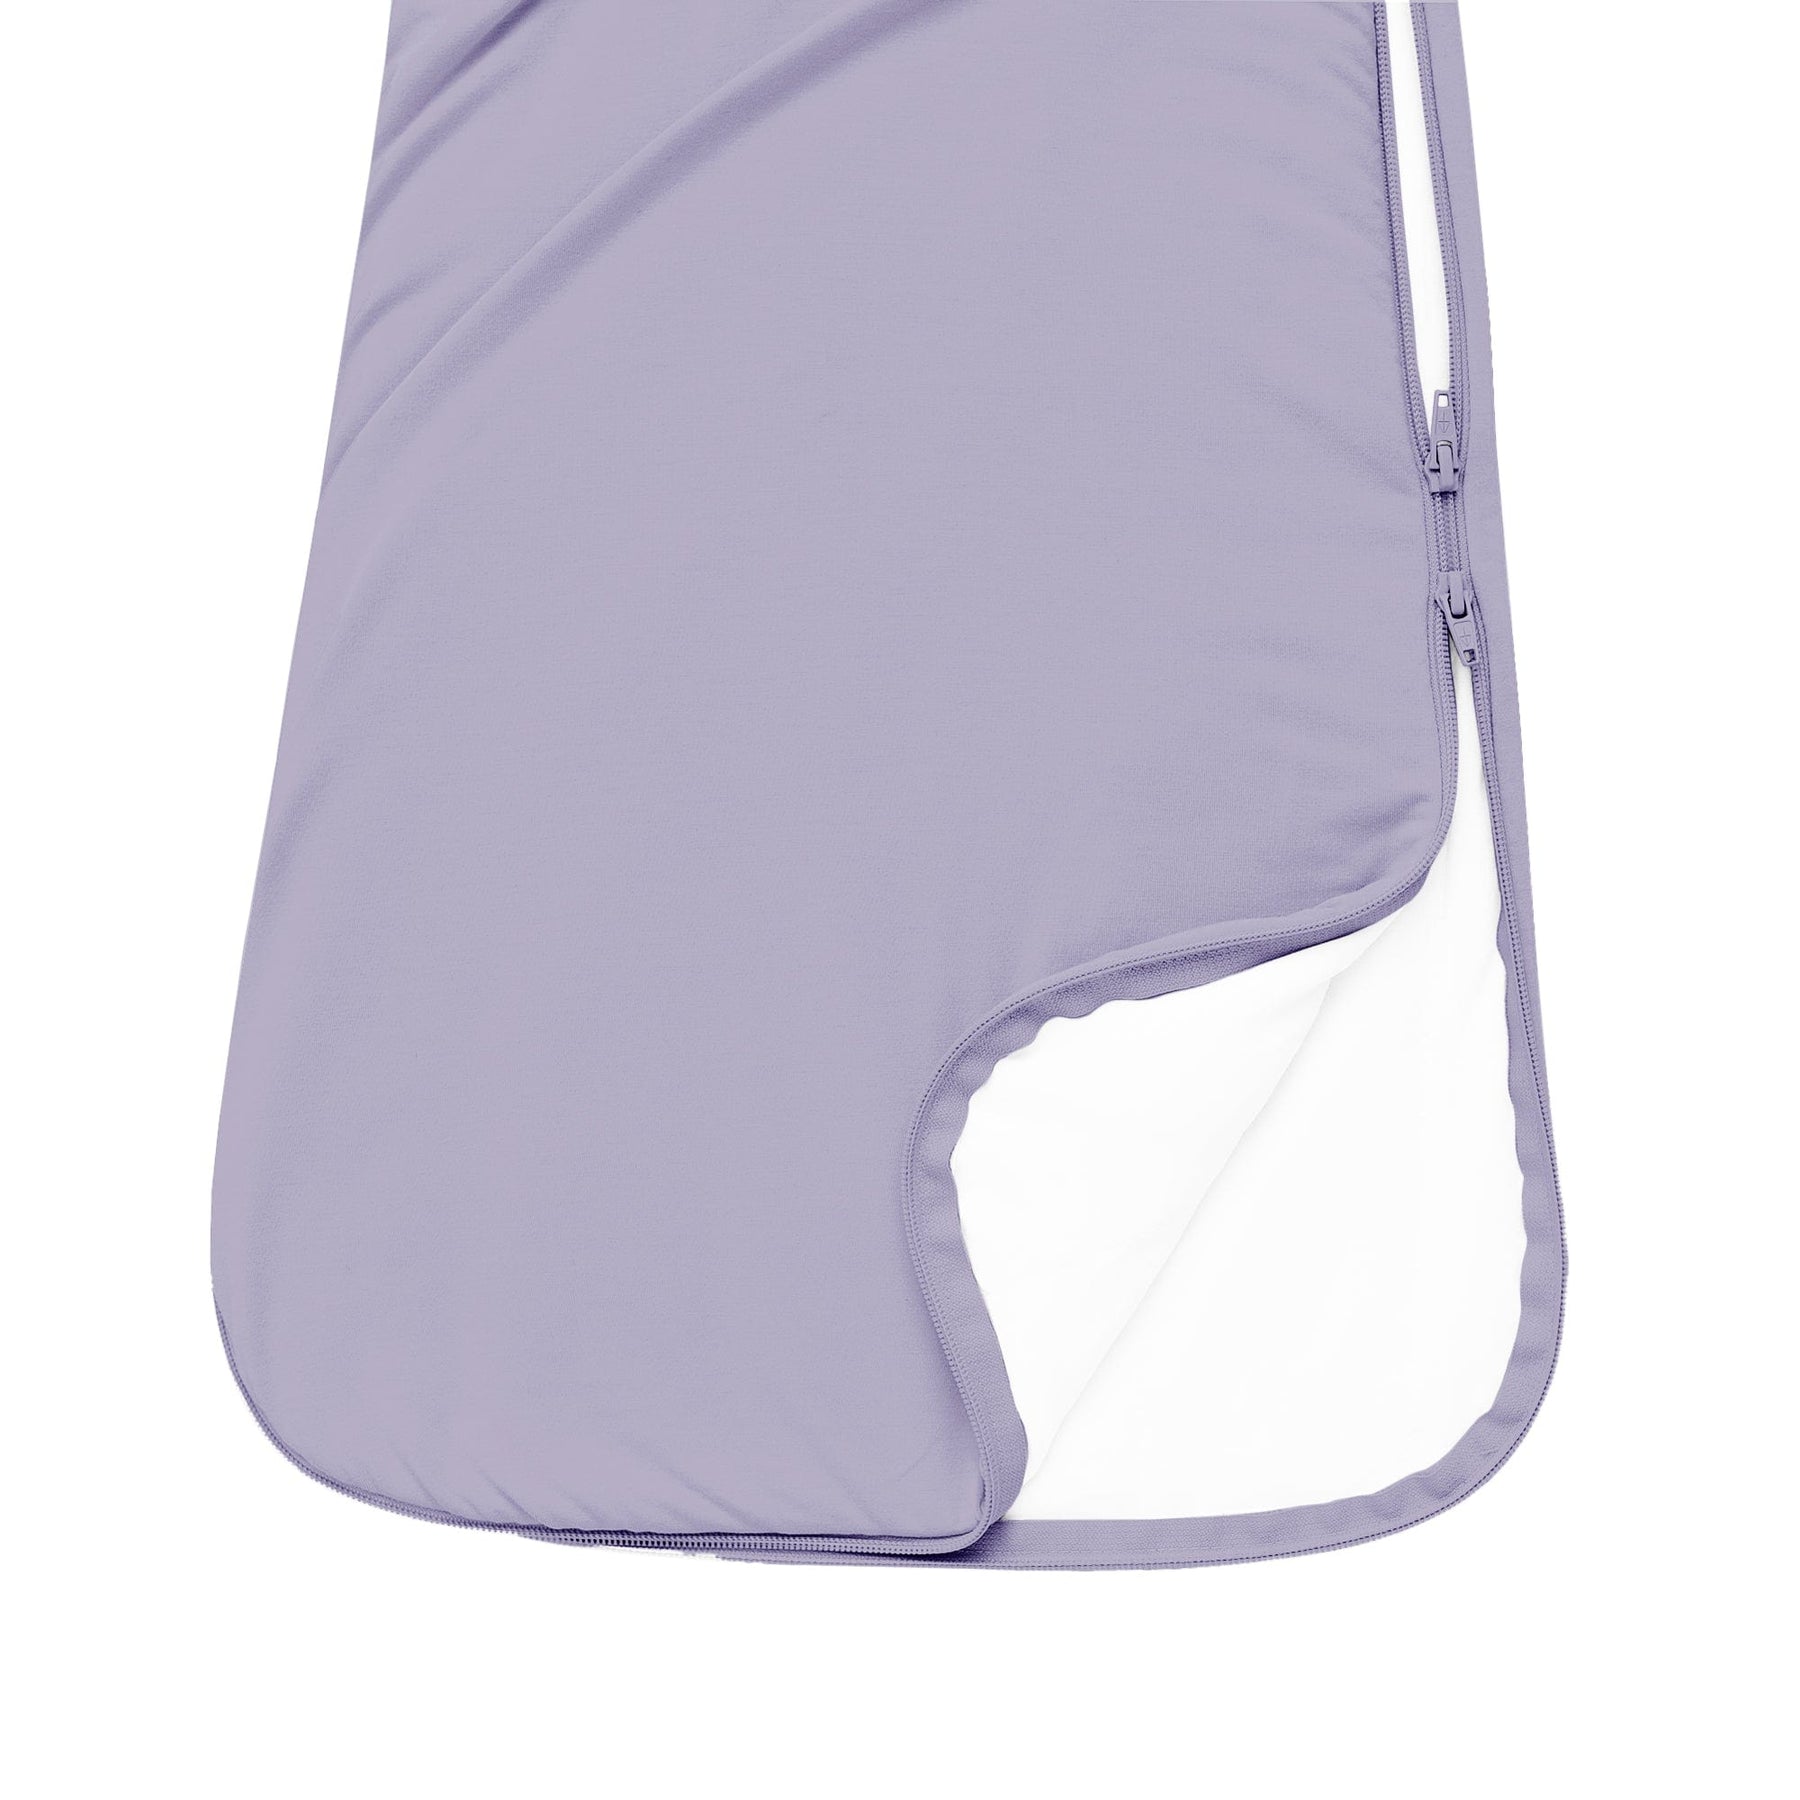 Kyte BABY Sleep Bag - Taro - 1.0 Tog